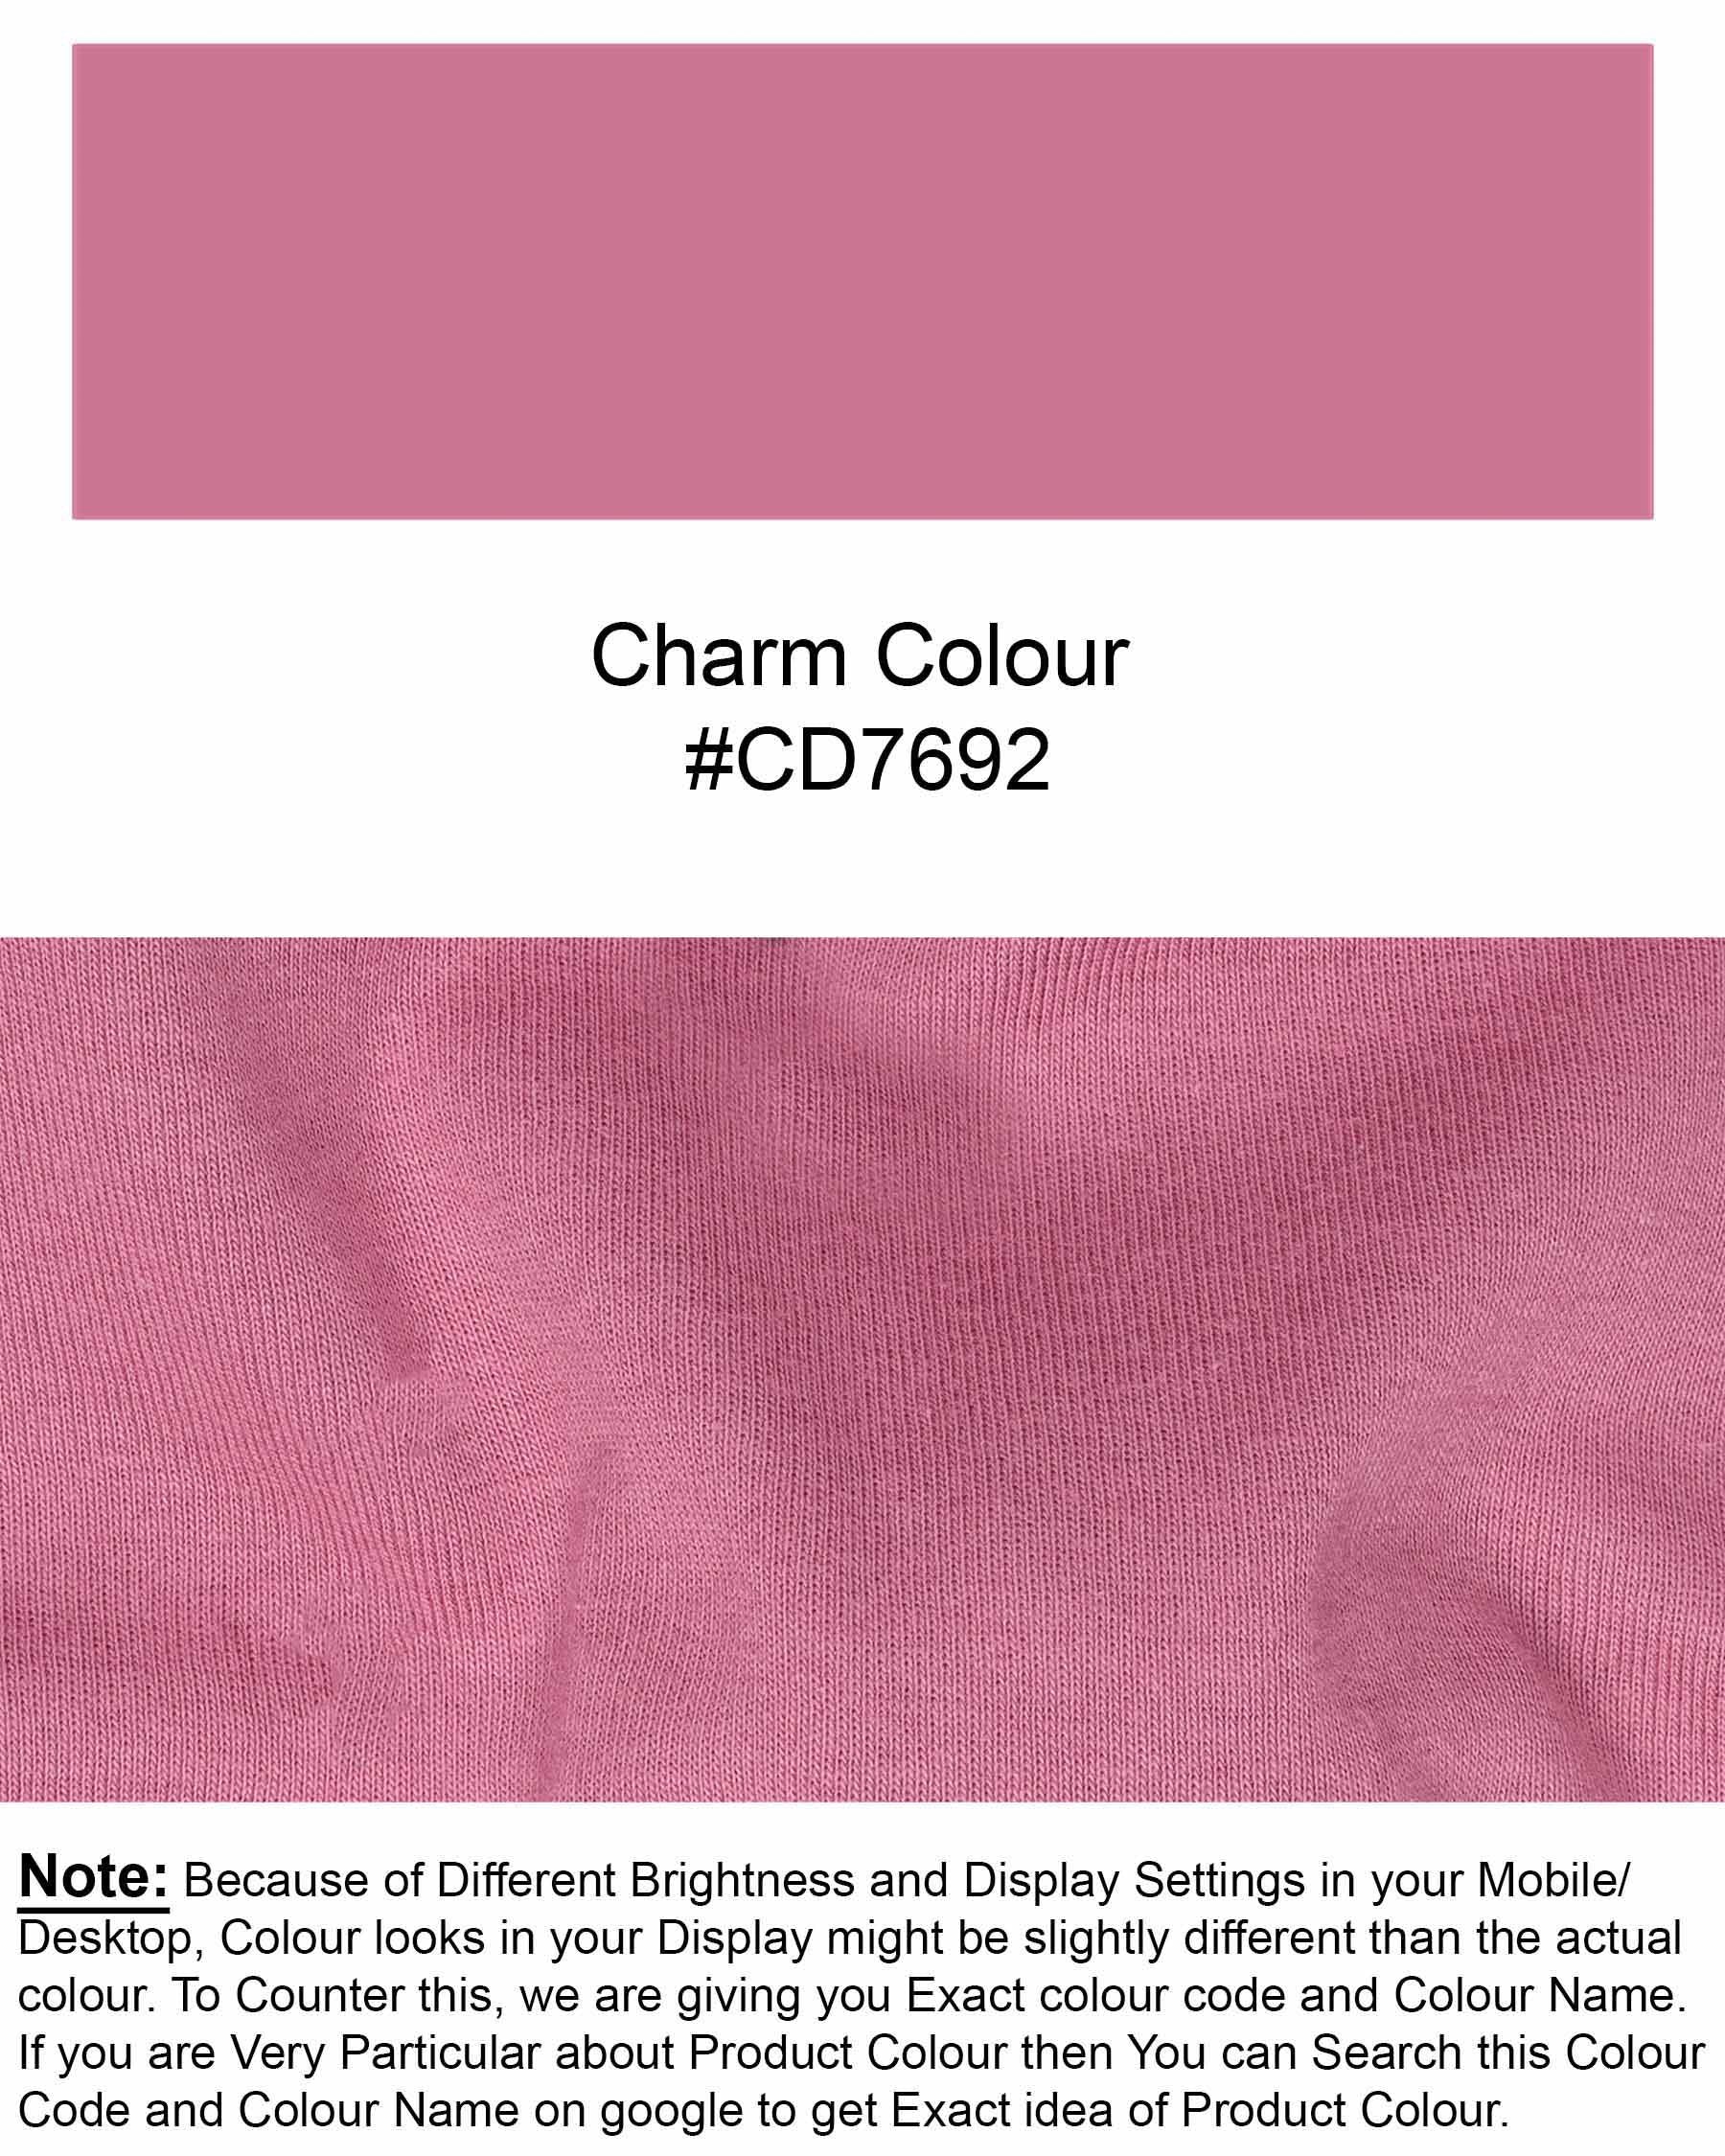 Charm Mauve Full Sleeve Premium Cotton Jersey Sweatshirt TS442-S, TS442-M, TS442-L, TS442-XL, TS442-XXL